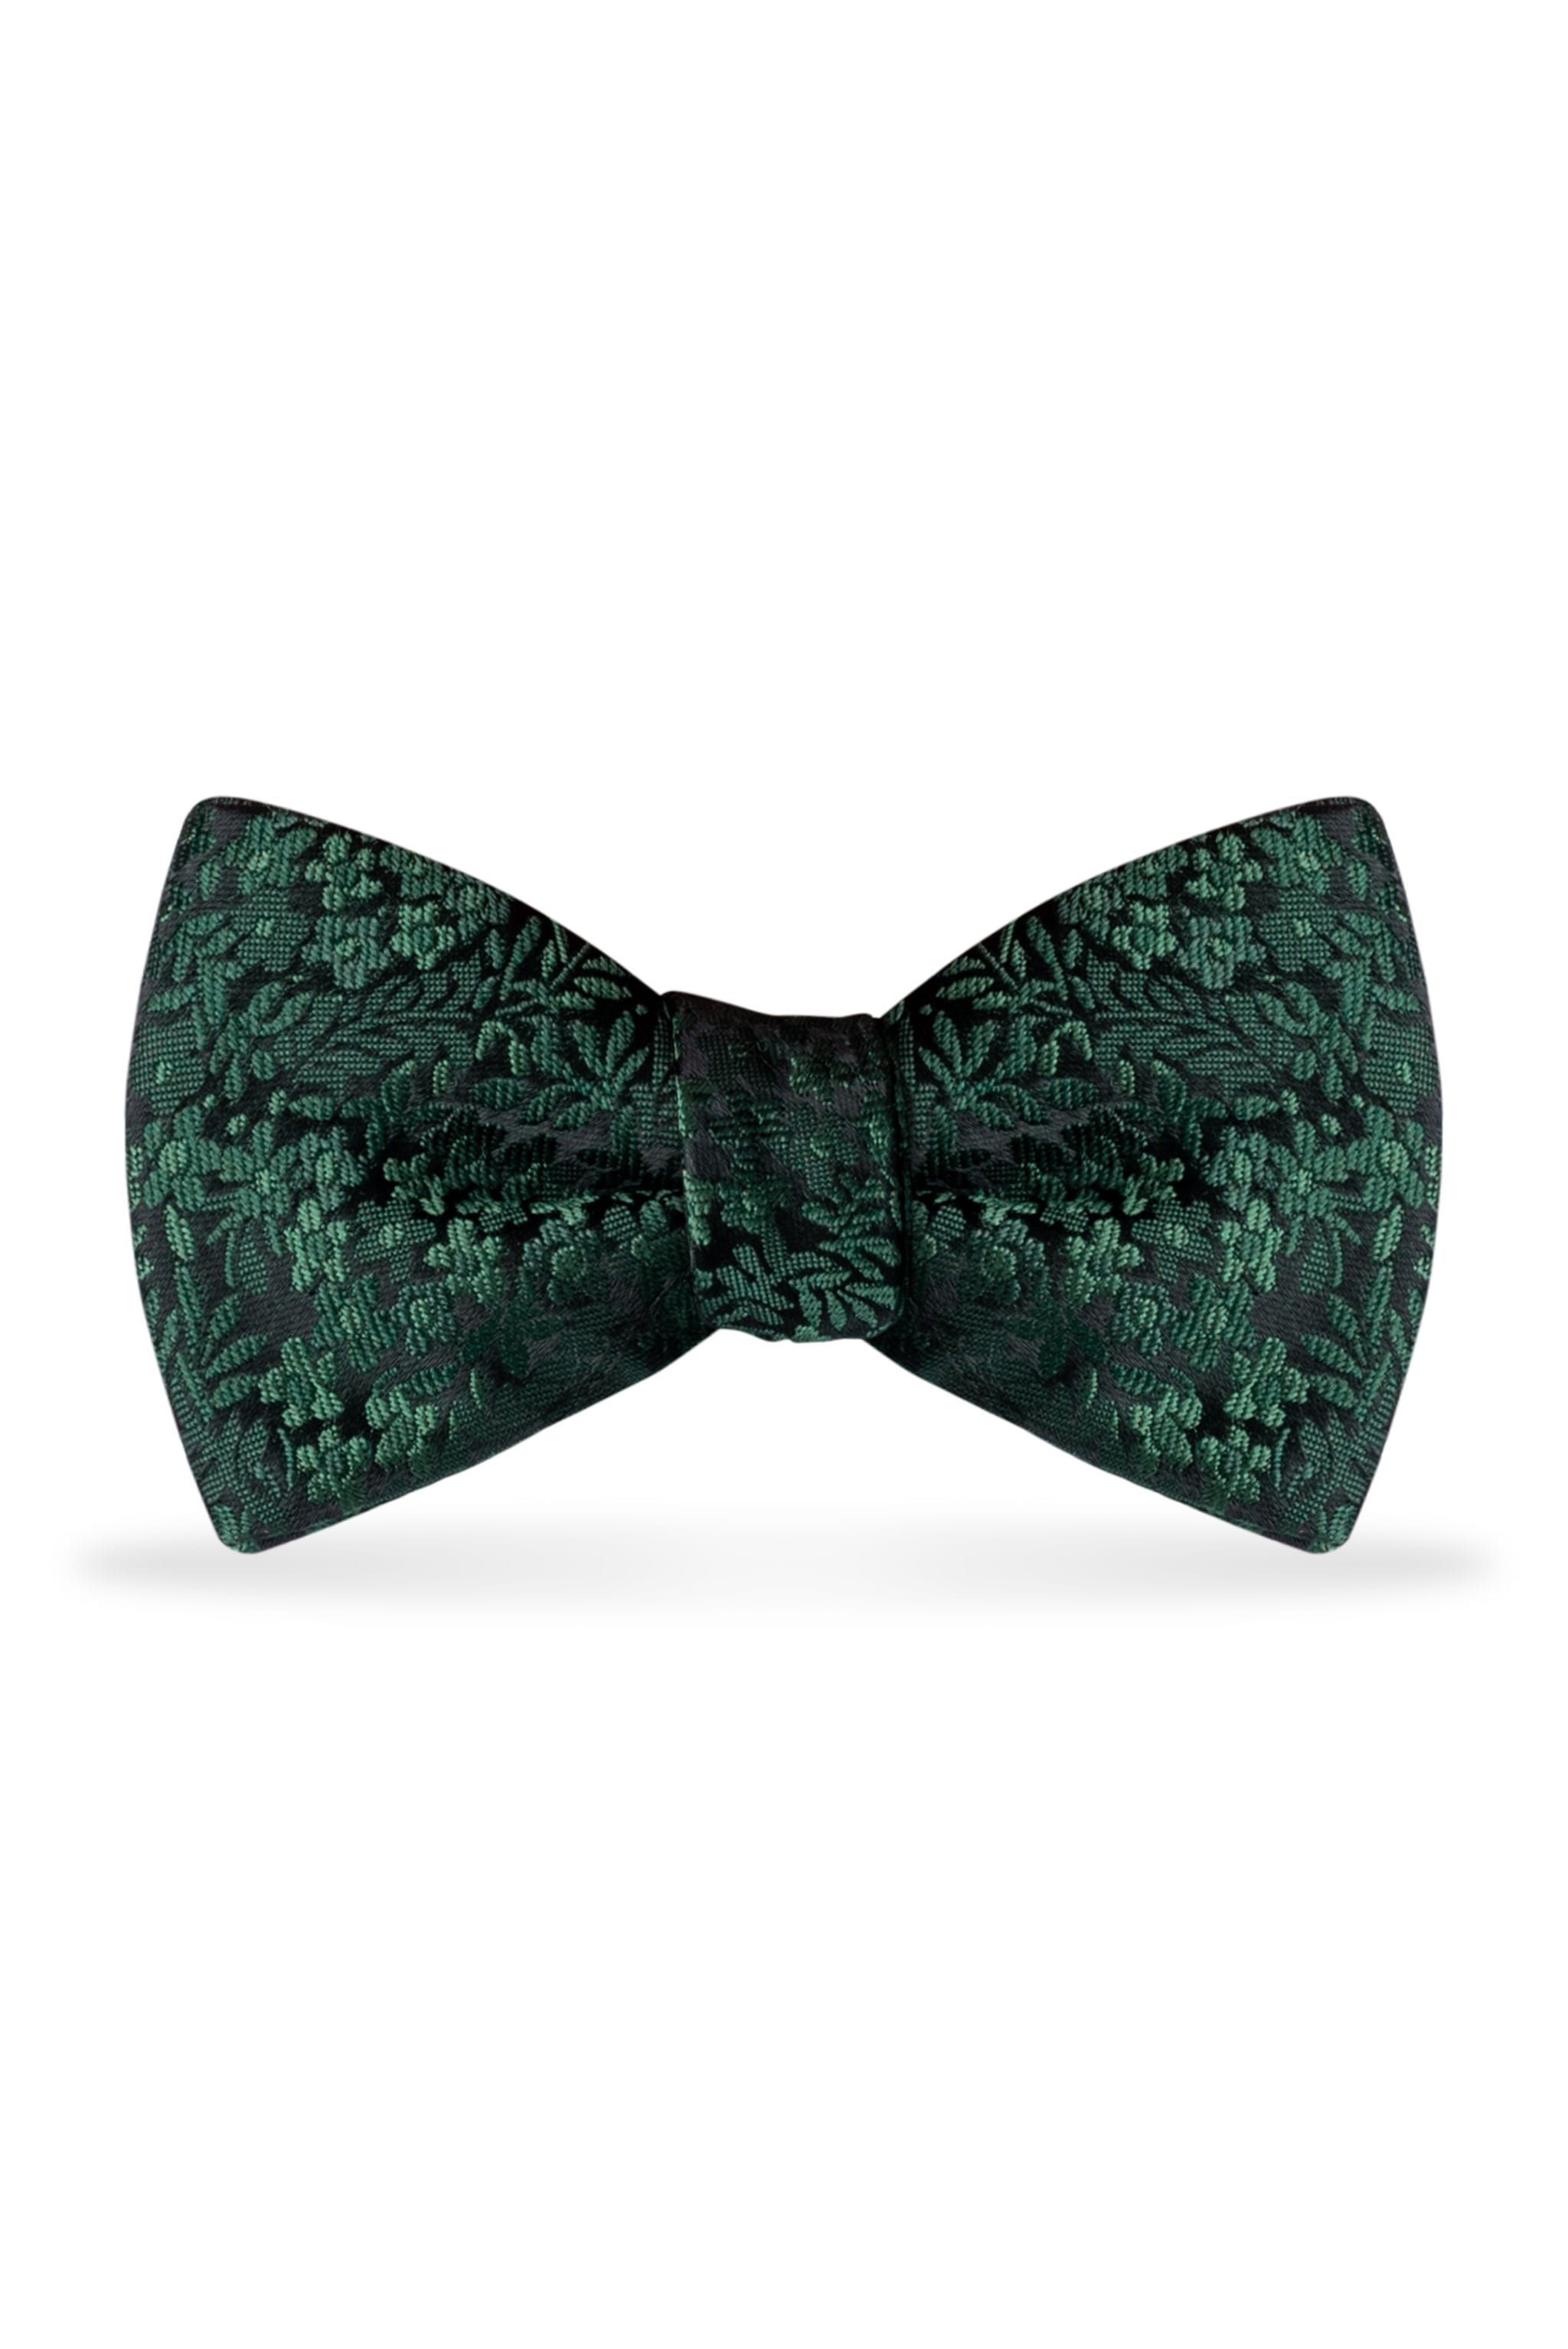 Floral Dark Green Bow Tie